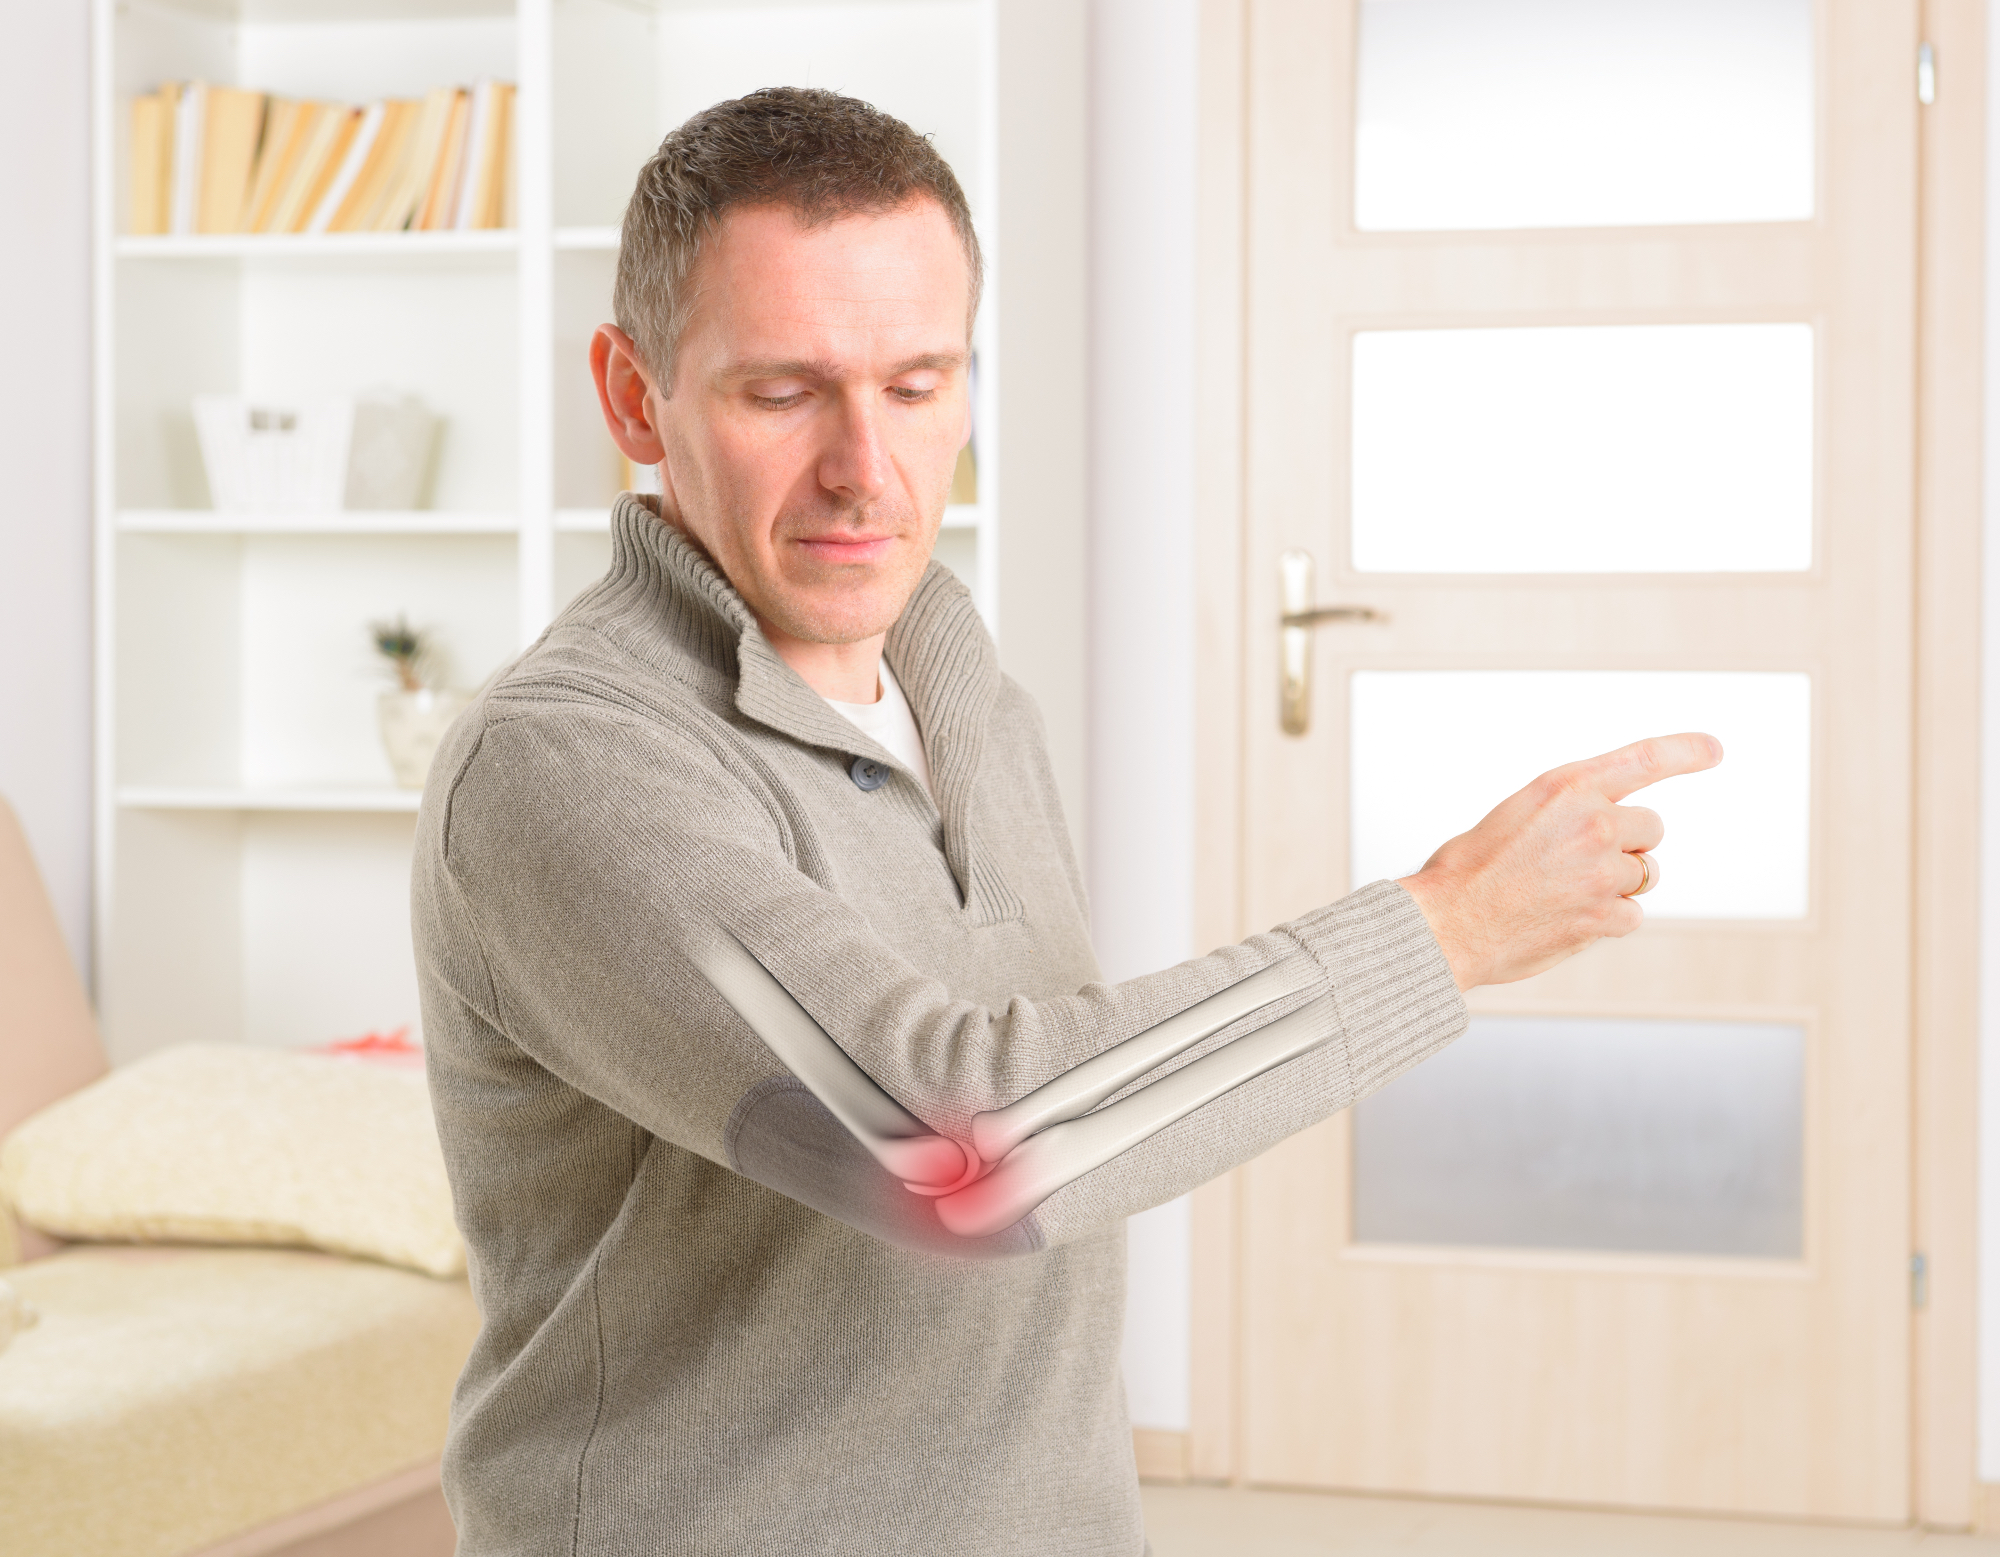 Revmatoidni artritis je nekaj, kar lahko človeku pomaga izboljšati način življenja